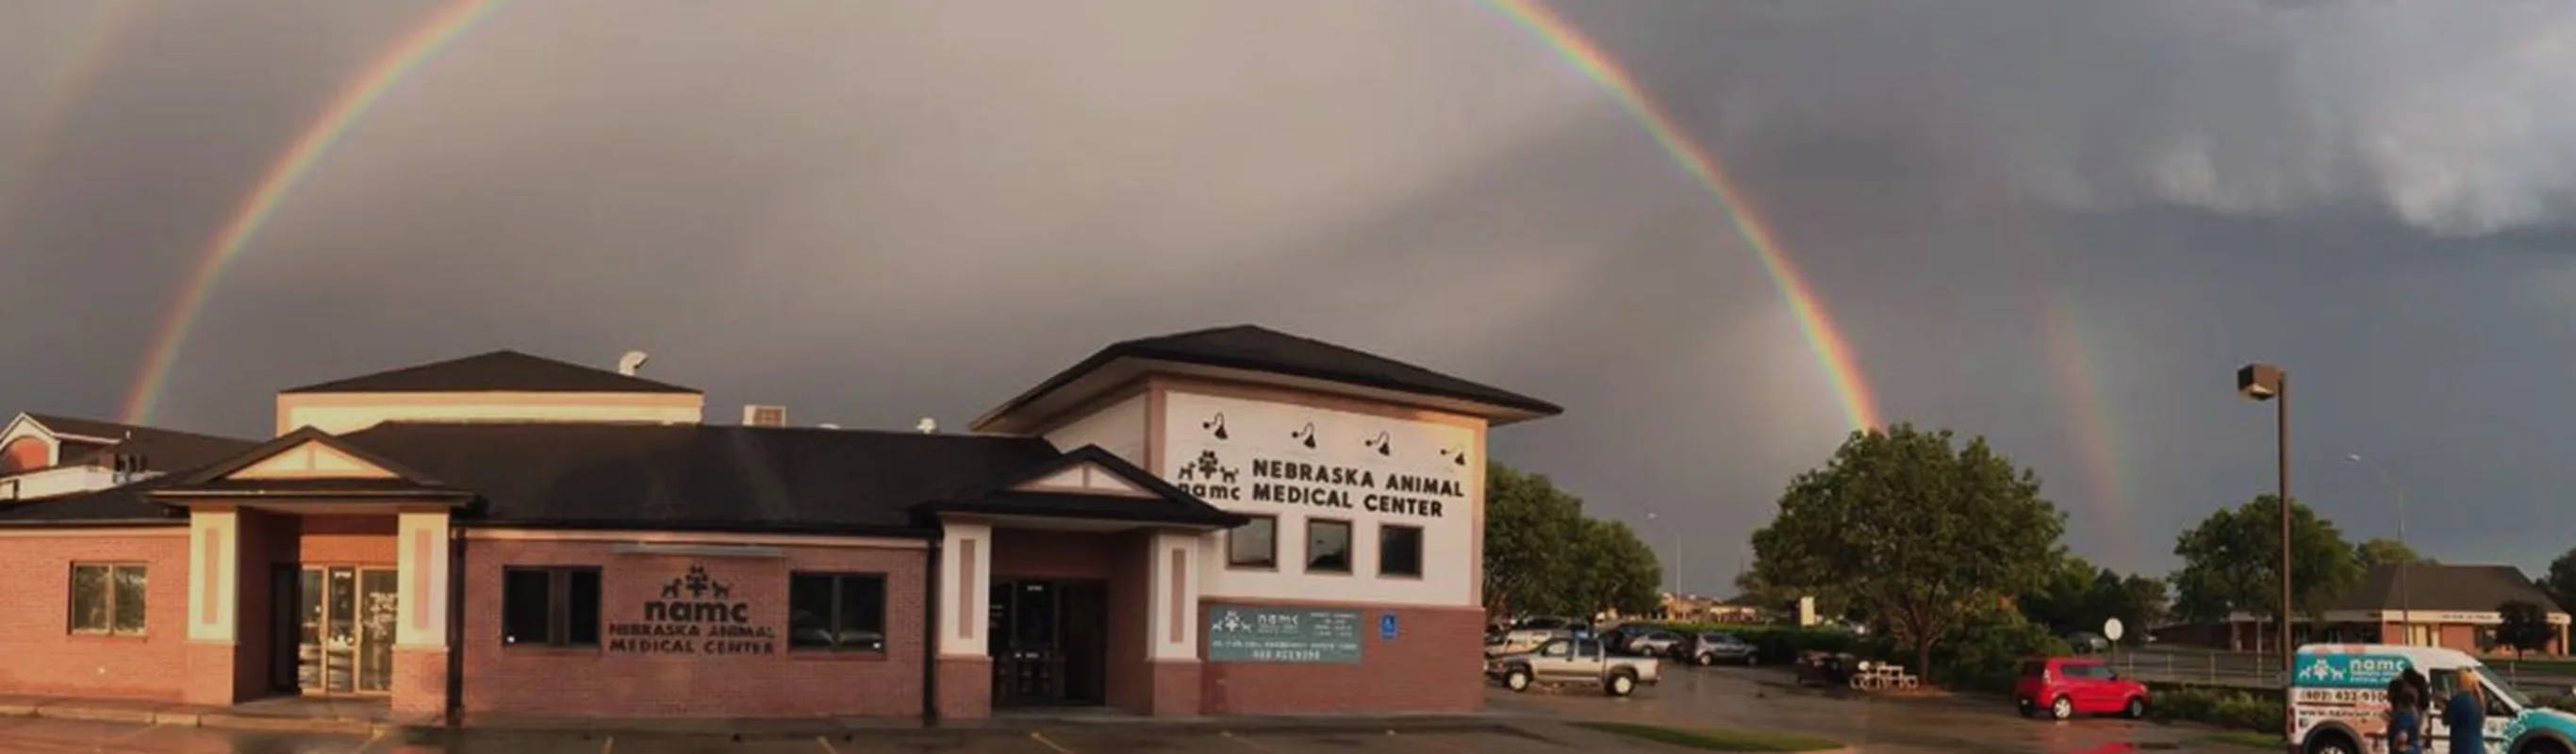 Nebraska Animal Medical Center with a double rainbow over.